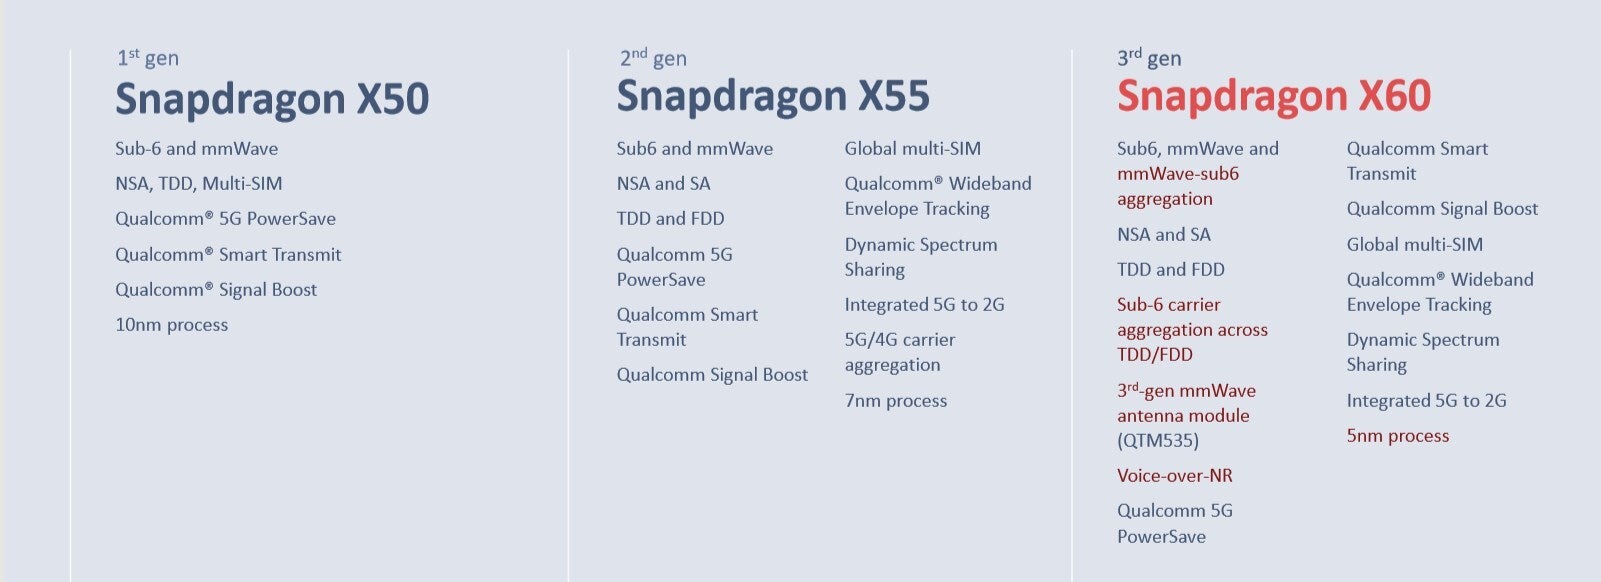 Qualcomm announces the Snapdragon X60, its next-gen 5G modem